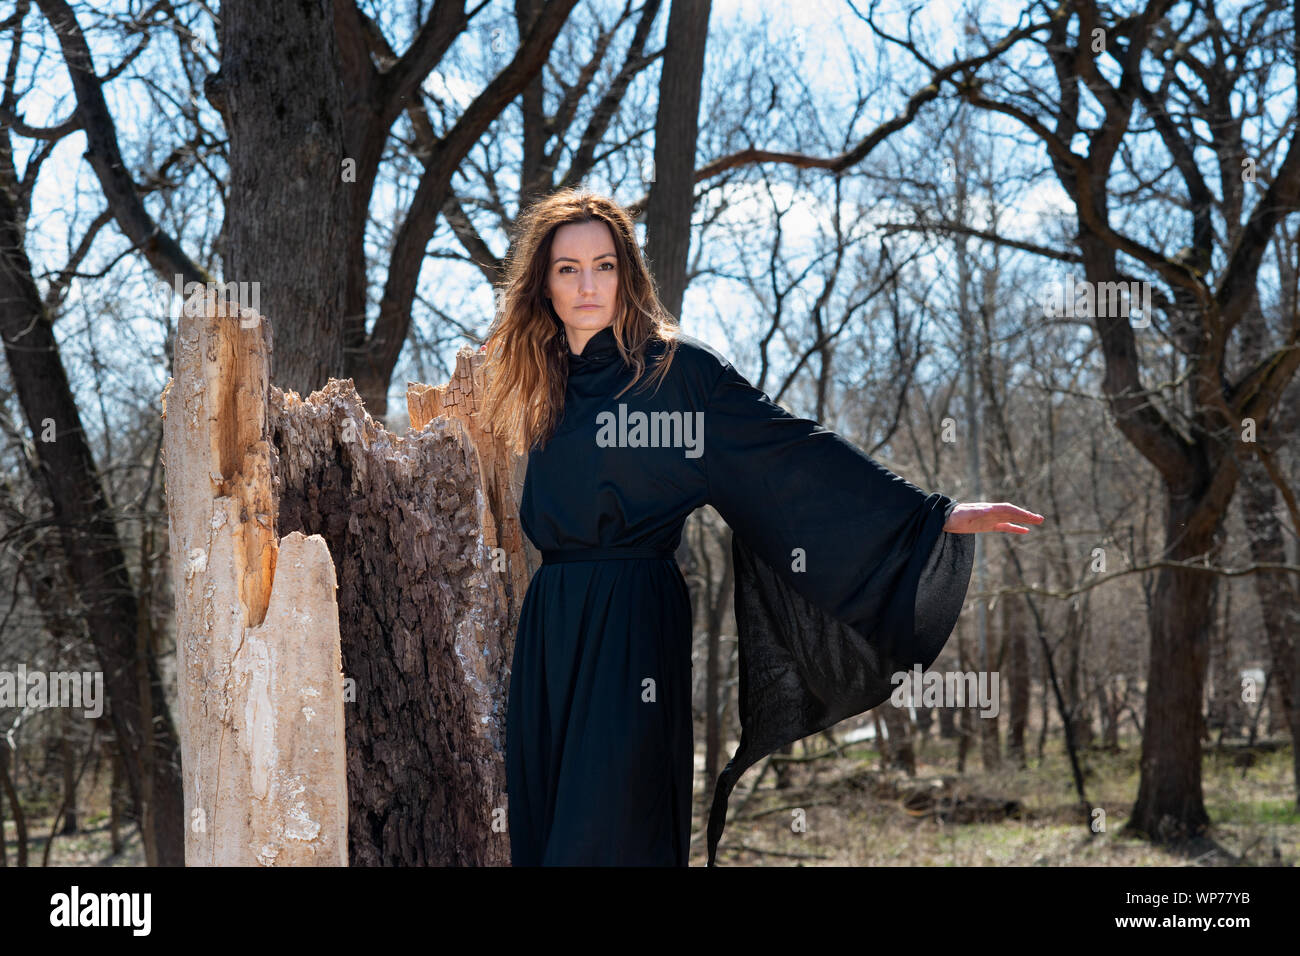 Giovani Tall Woman con scuri capelli lunghi in black robes nel profondo della foresta. Streghe. Halloween e concezione gotica. La stregoneria e magia. Foto Stock